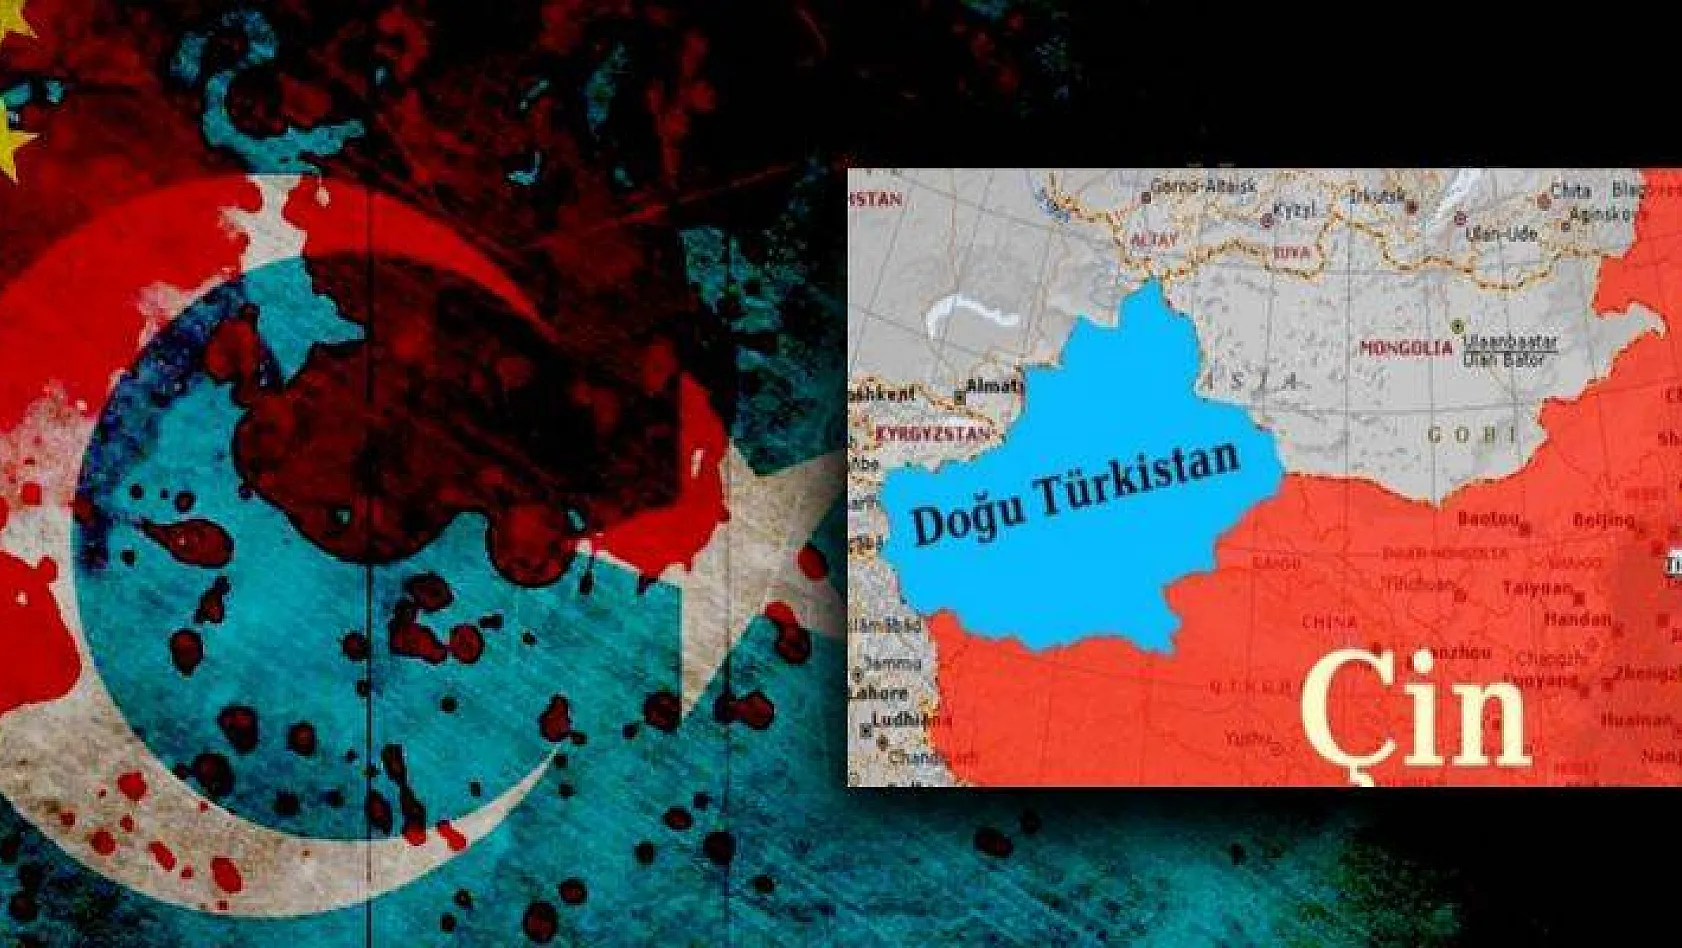 Çin'in iadesini istediği Doğu Türkistanlı: 'Çin'e iade ederseniz beni öldürürler'